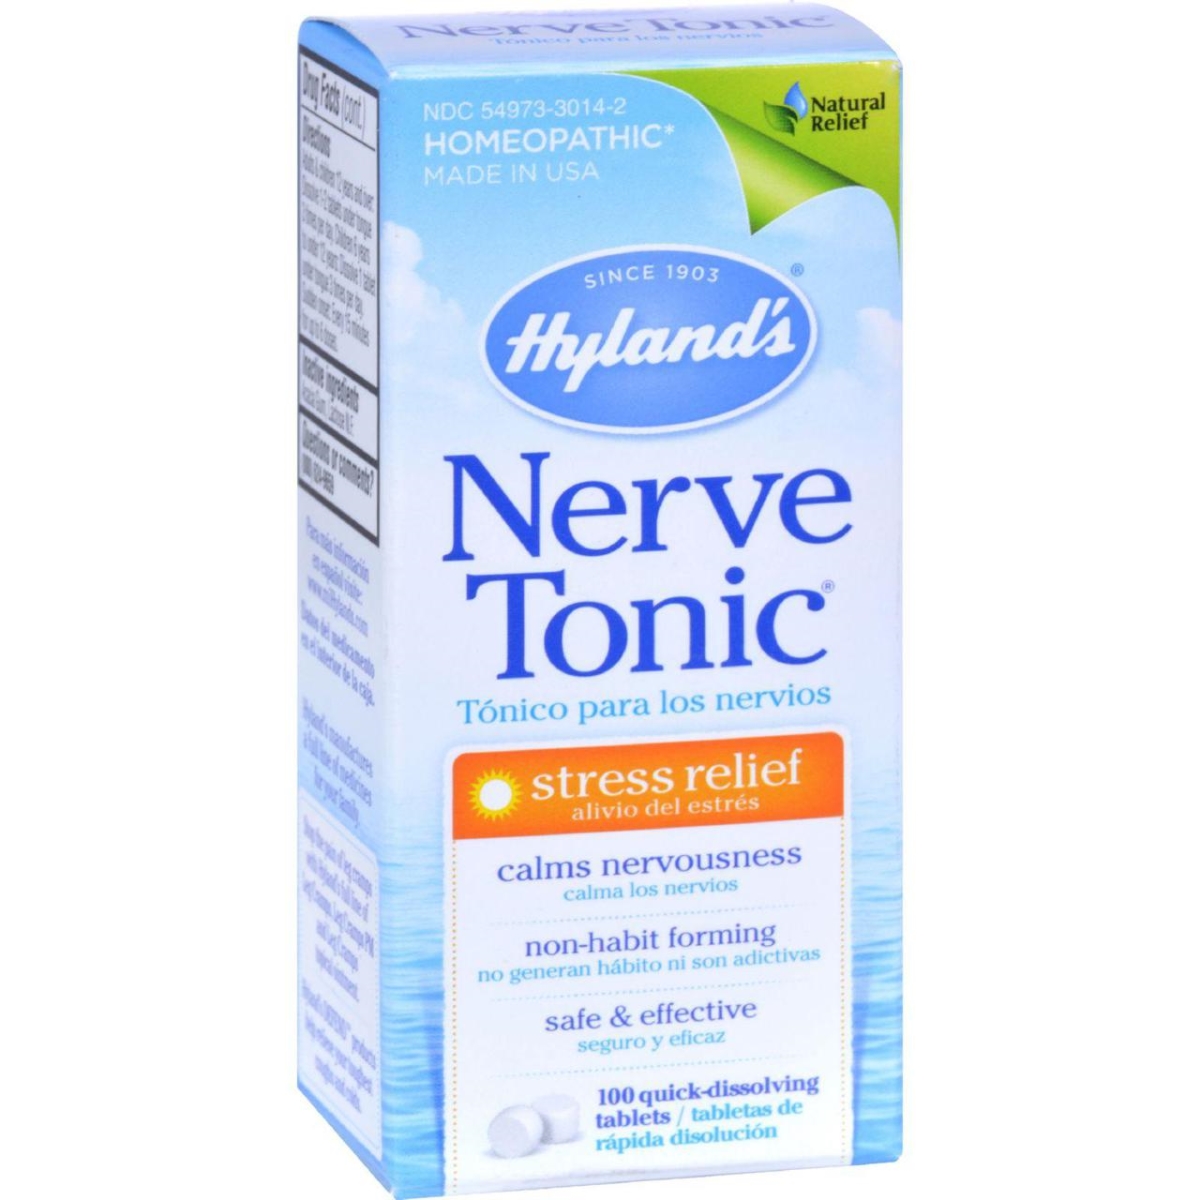 Hg0365593 Nerve Tonic - 100 Tablets